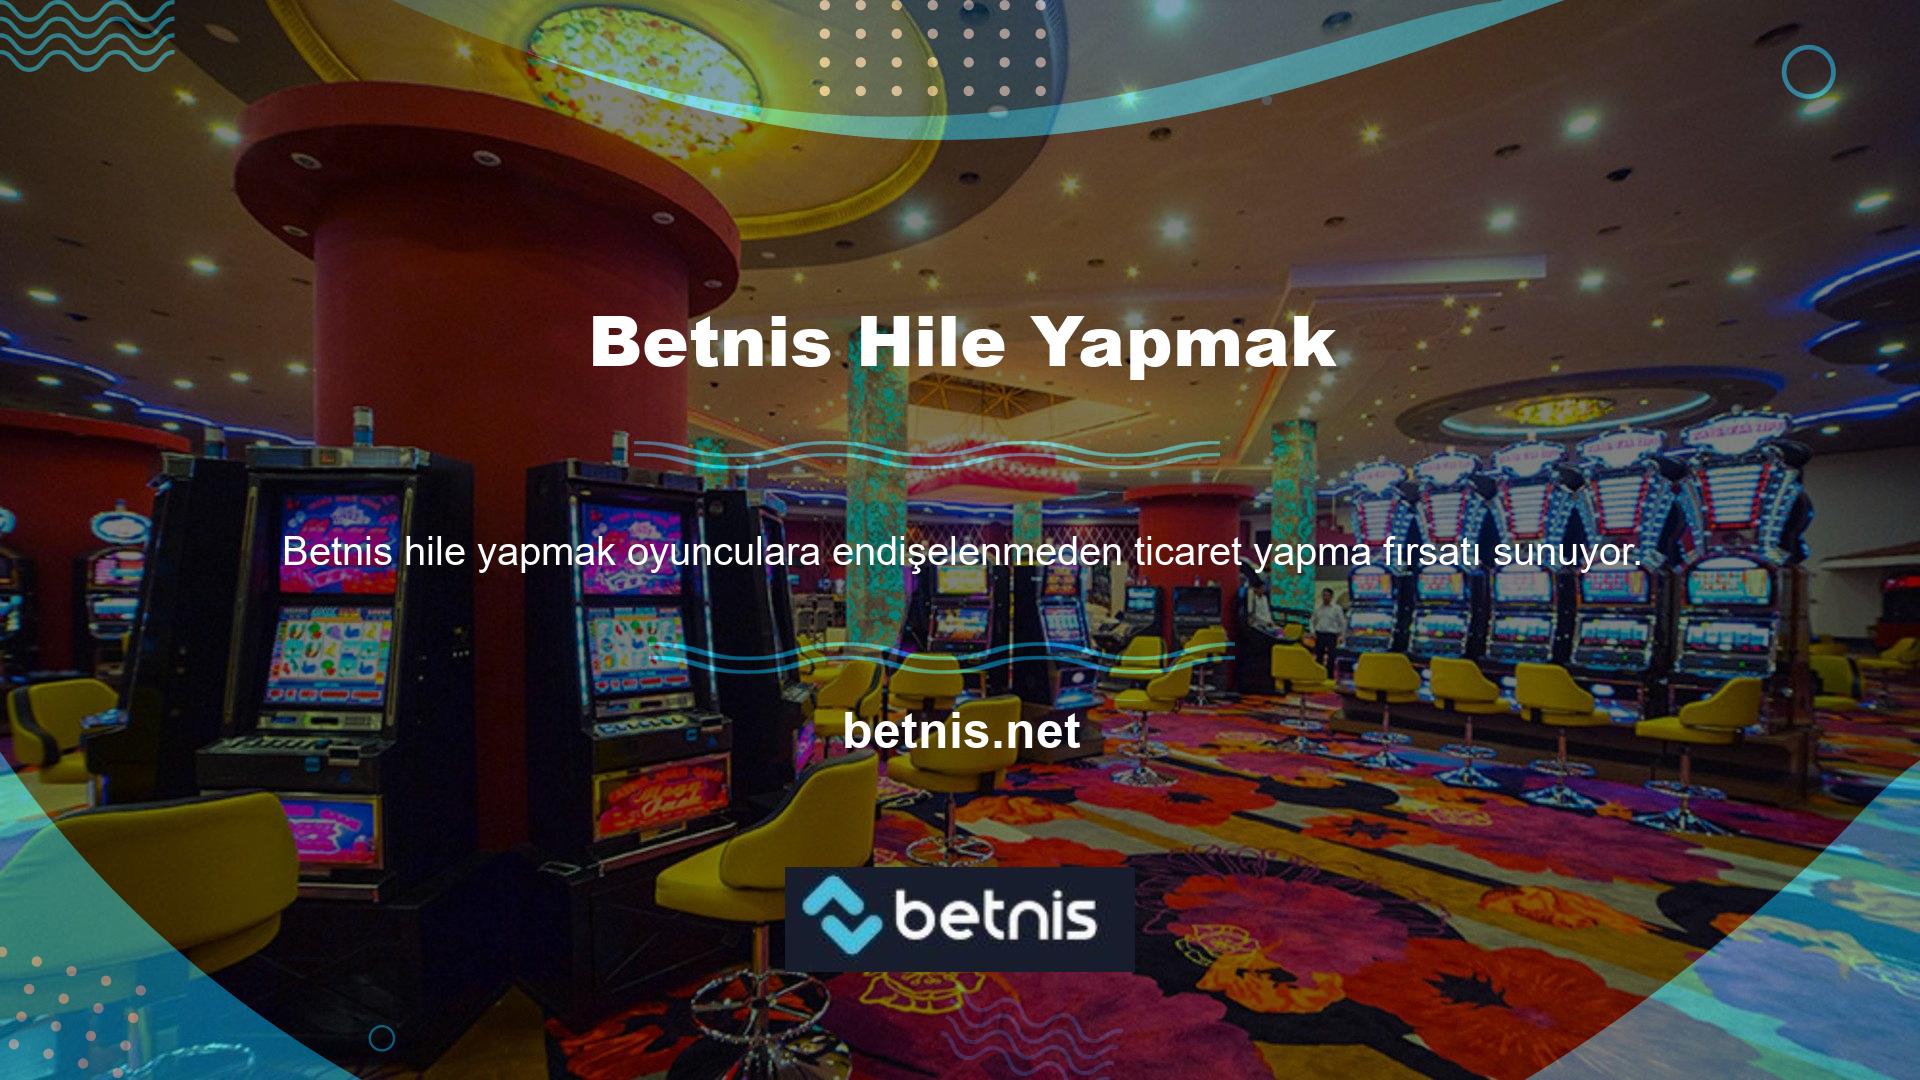 " Betnis Poker' de hile yapma seçeneğinin kullanılması kesinlikle yasaktır